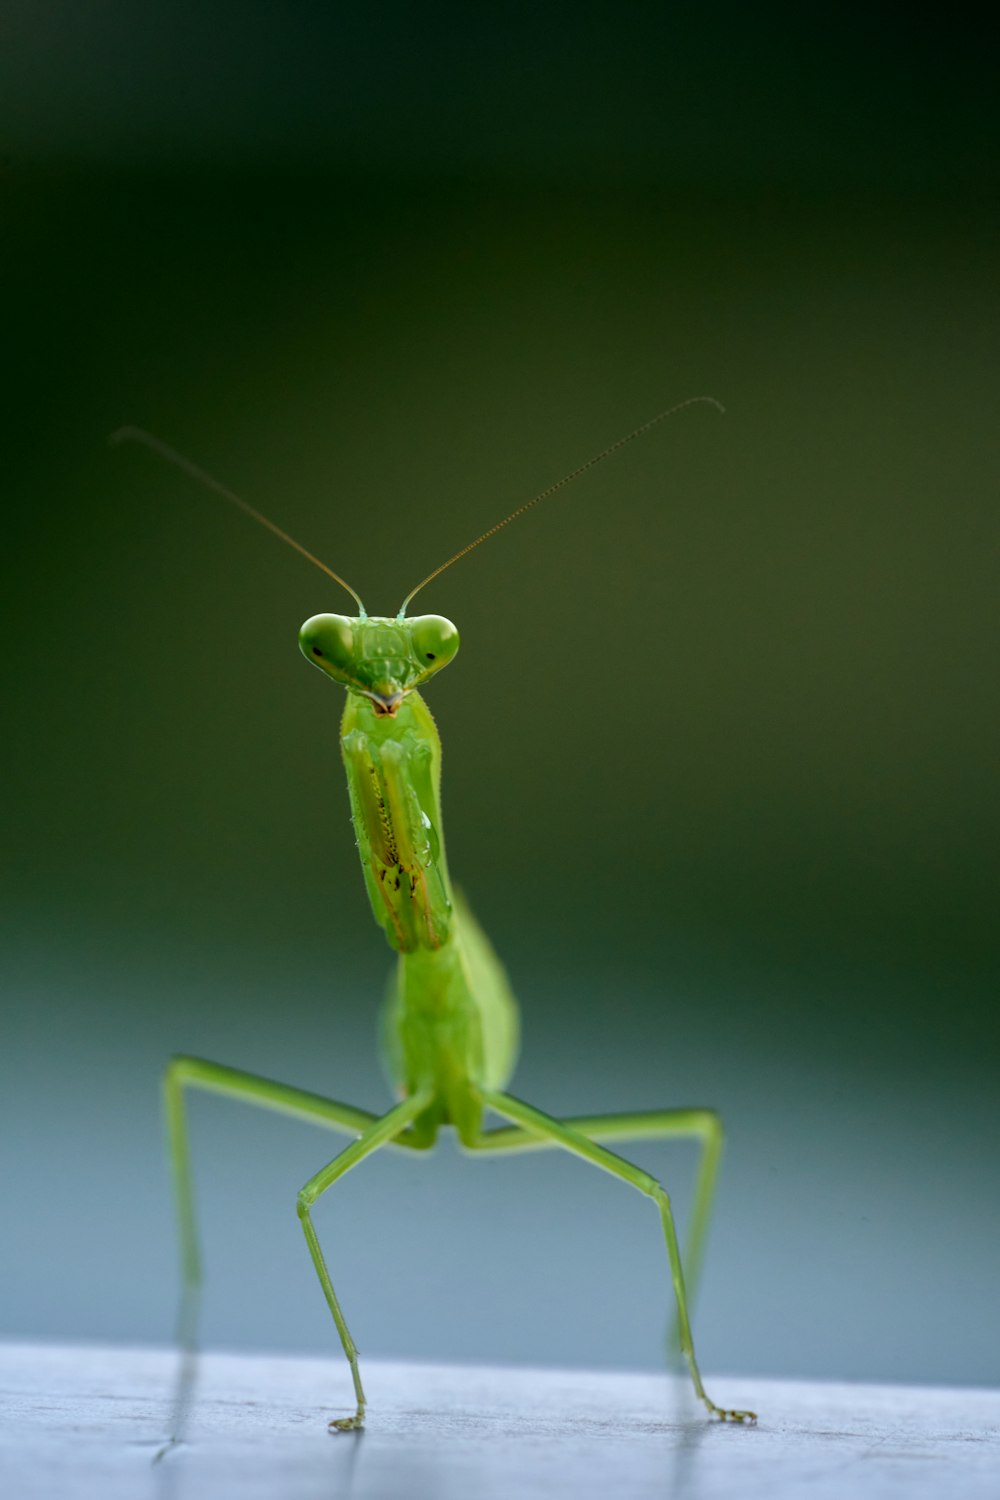 ein grünes Insekt mit langen Antennen